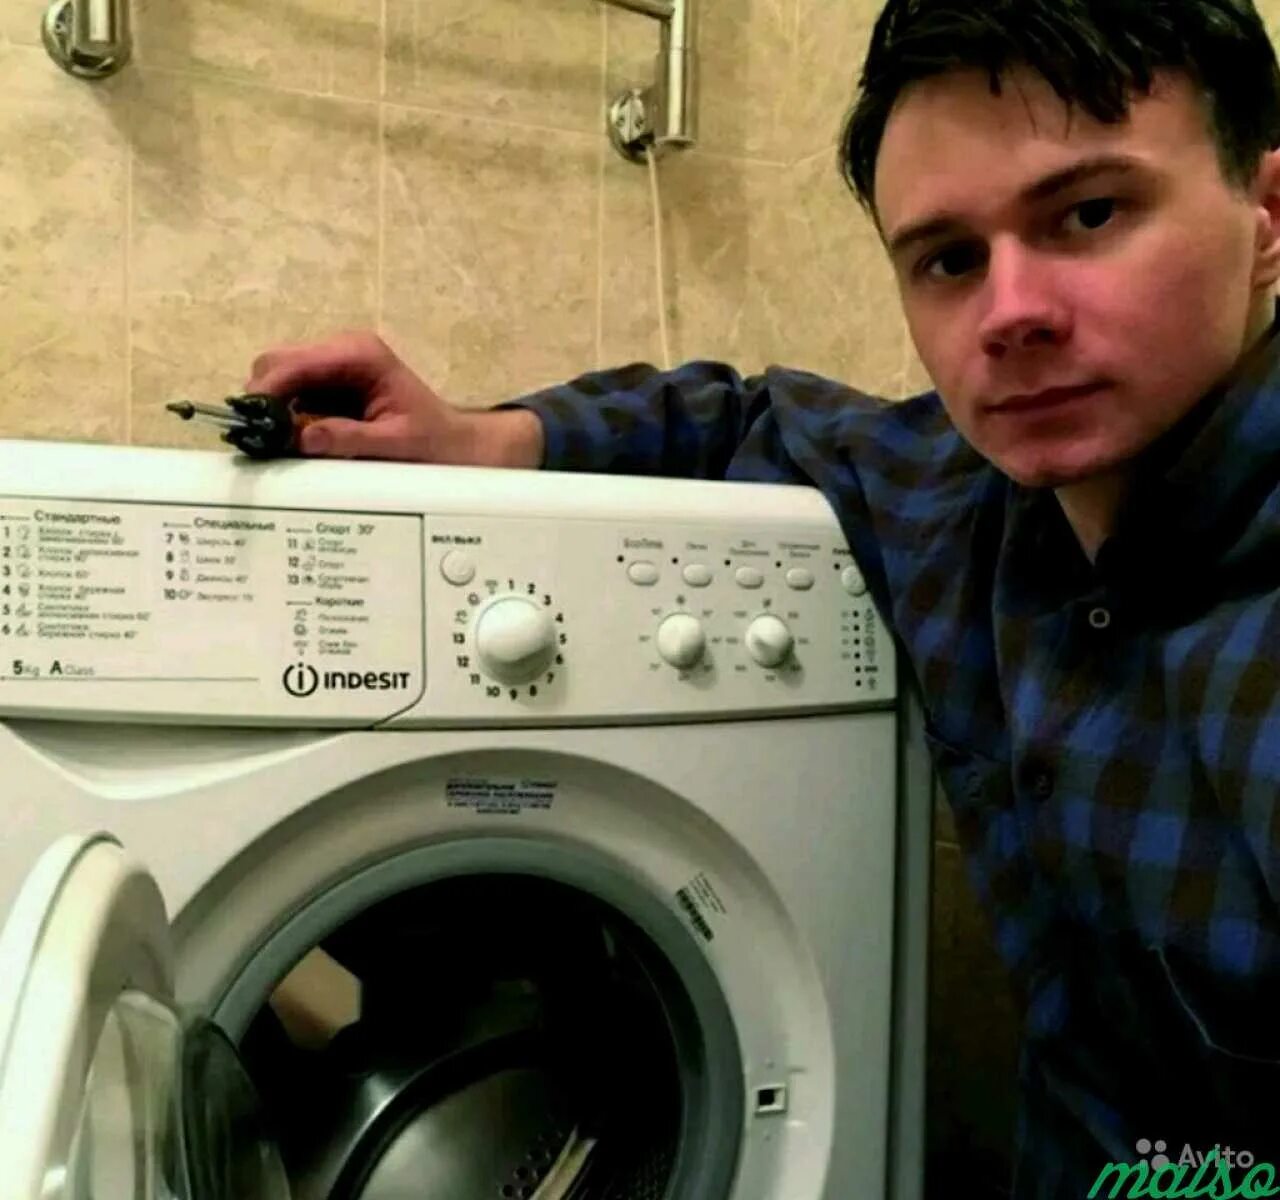 Мастер стиральная машина Индезит. Мастер по стиральным машинам. Мастер по ремонту стиральных машинок. Ремонт стиральных машин.